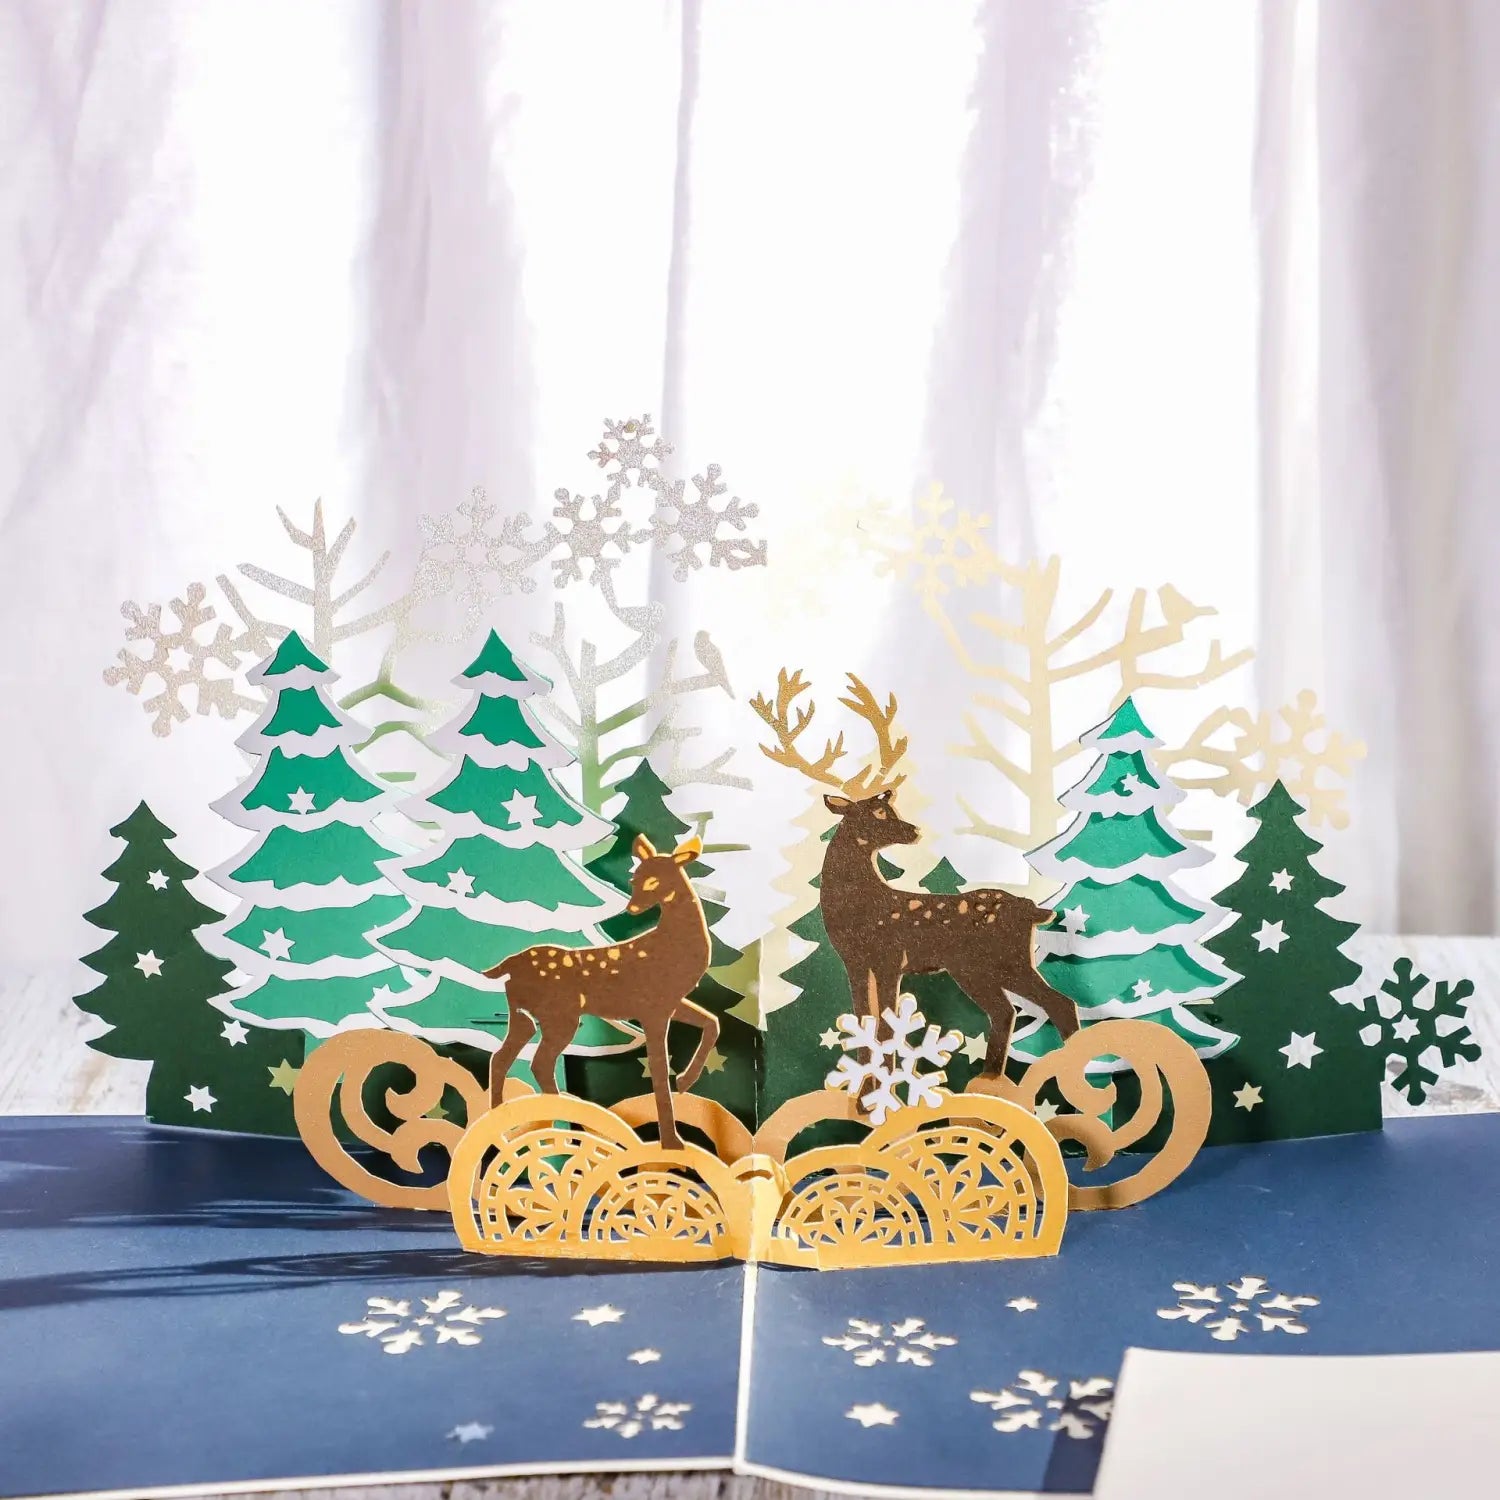 Lovemi – Handgeschöpfte Weihnachts-Elchkarten aus Papier